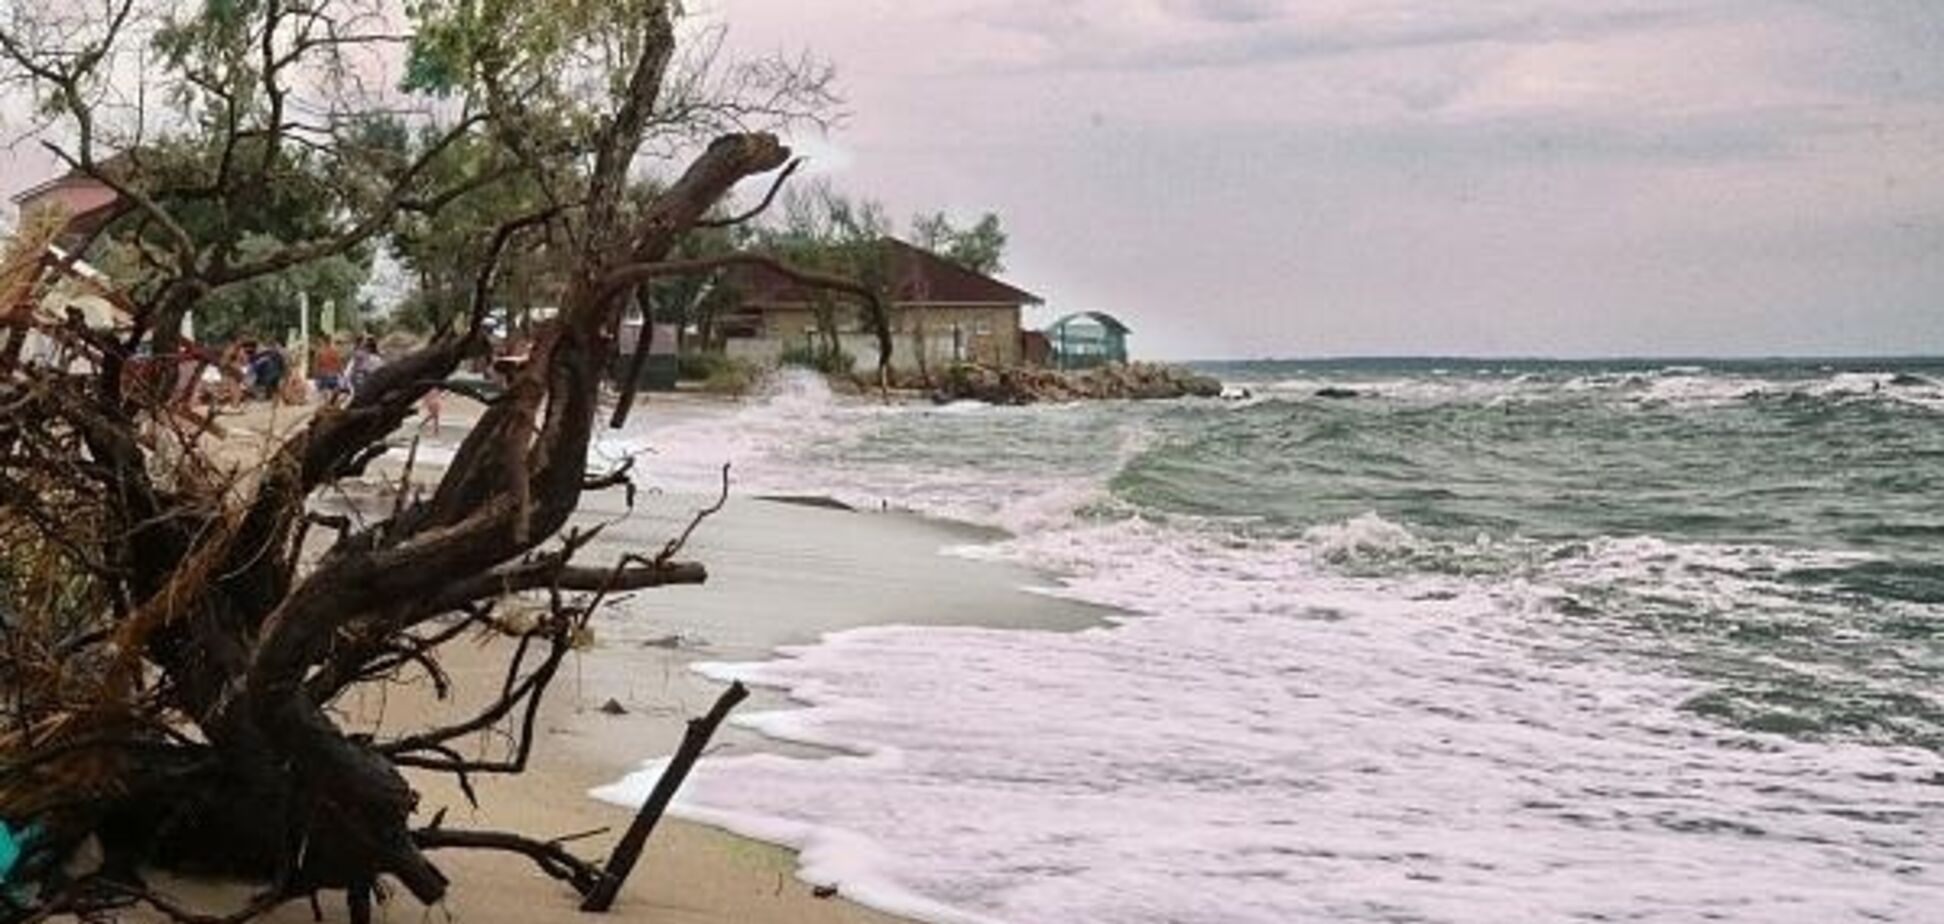 Пляжи размыло, торчит арматура: в Крыму произошла новая беда